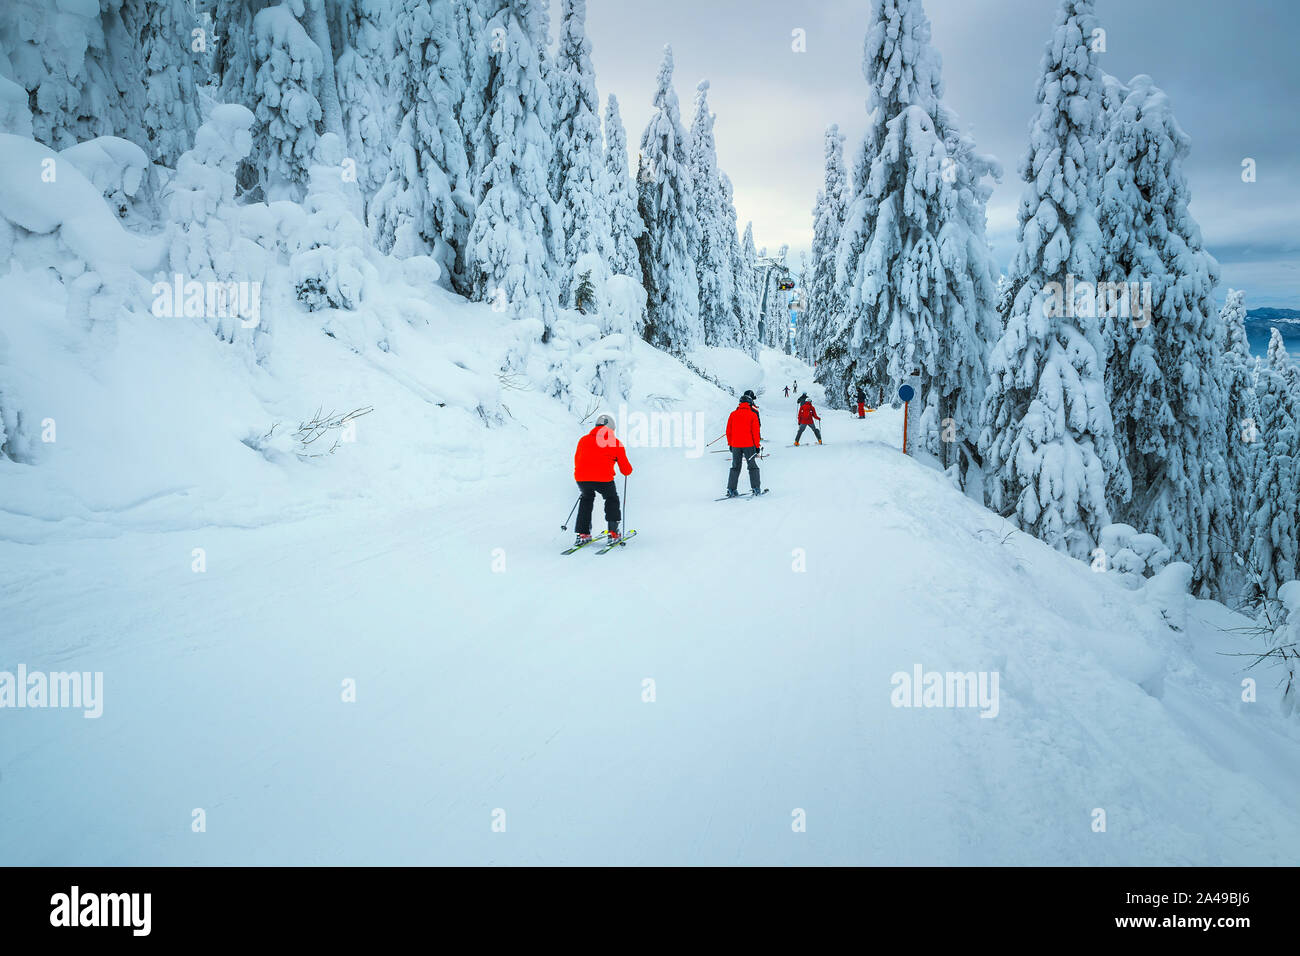 Arbres couverts de neige magnifique et l'hiver ski resort. Amateurs de ski alpin descente en célèbre Predeal ski resort, Transylvanie, Roumanie, Europe Banque D'Images